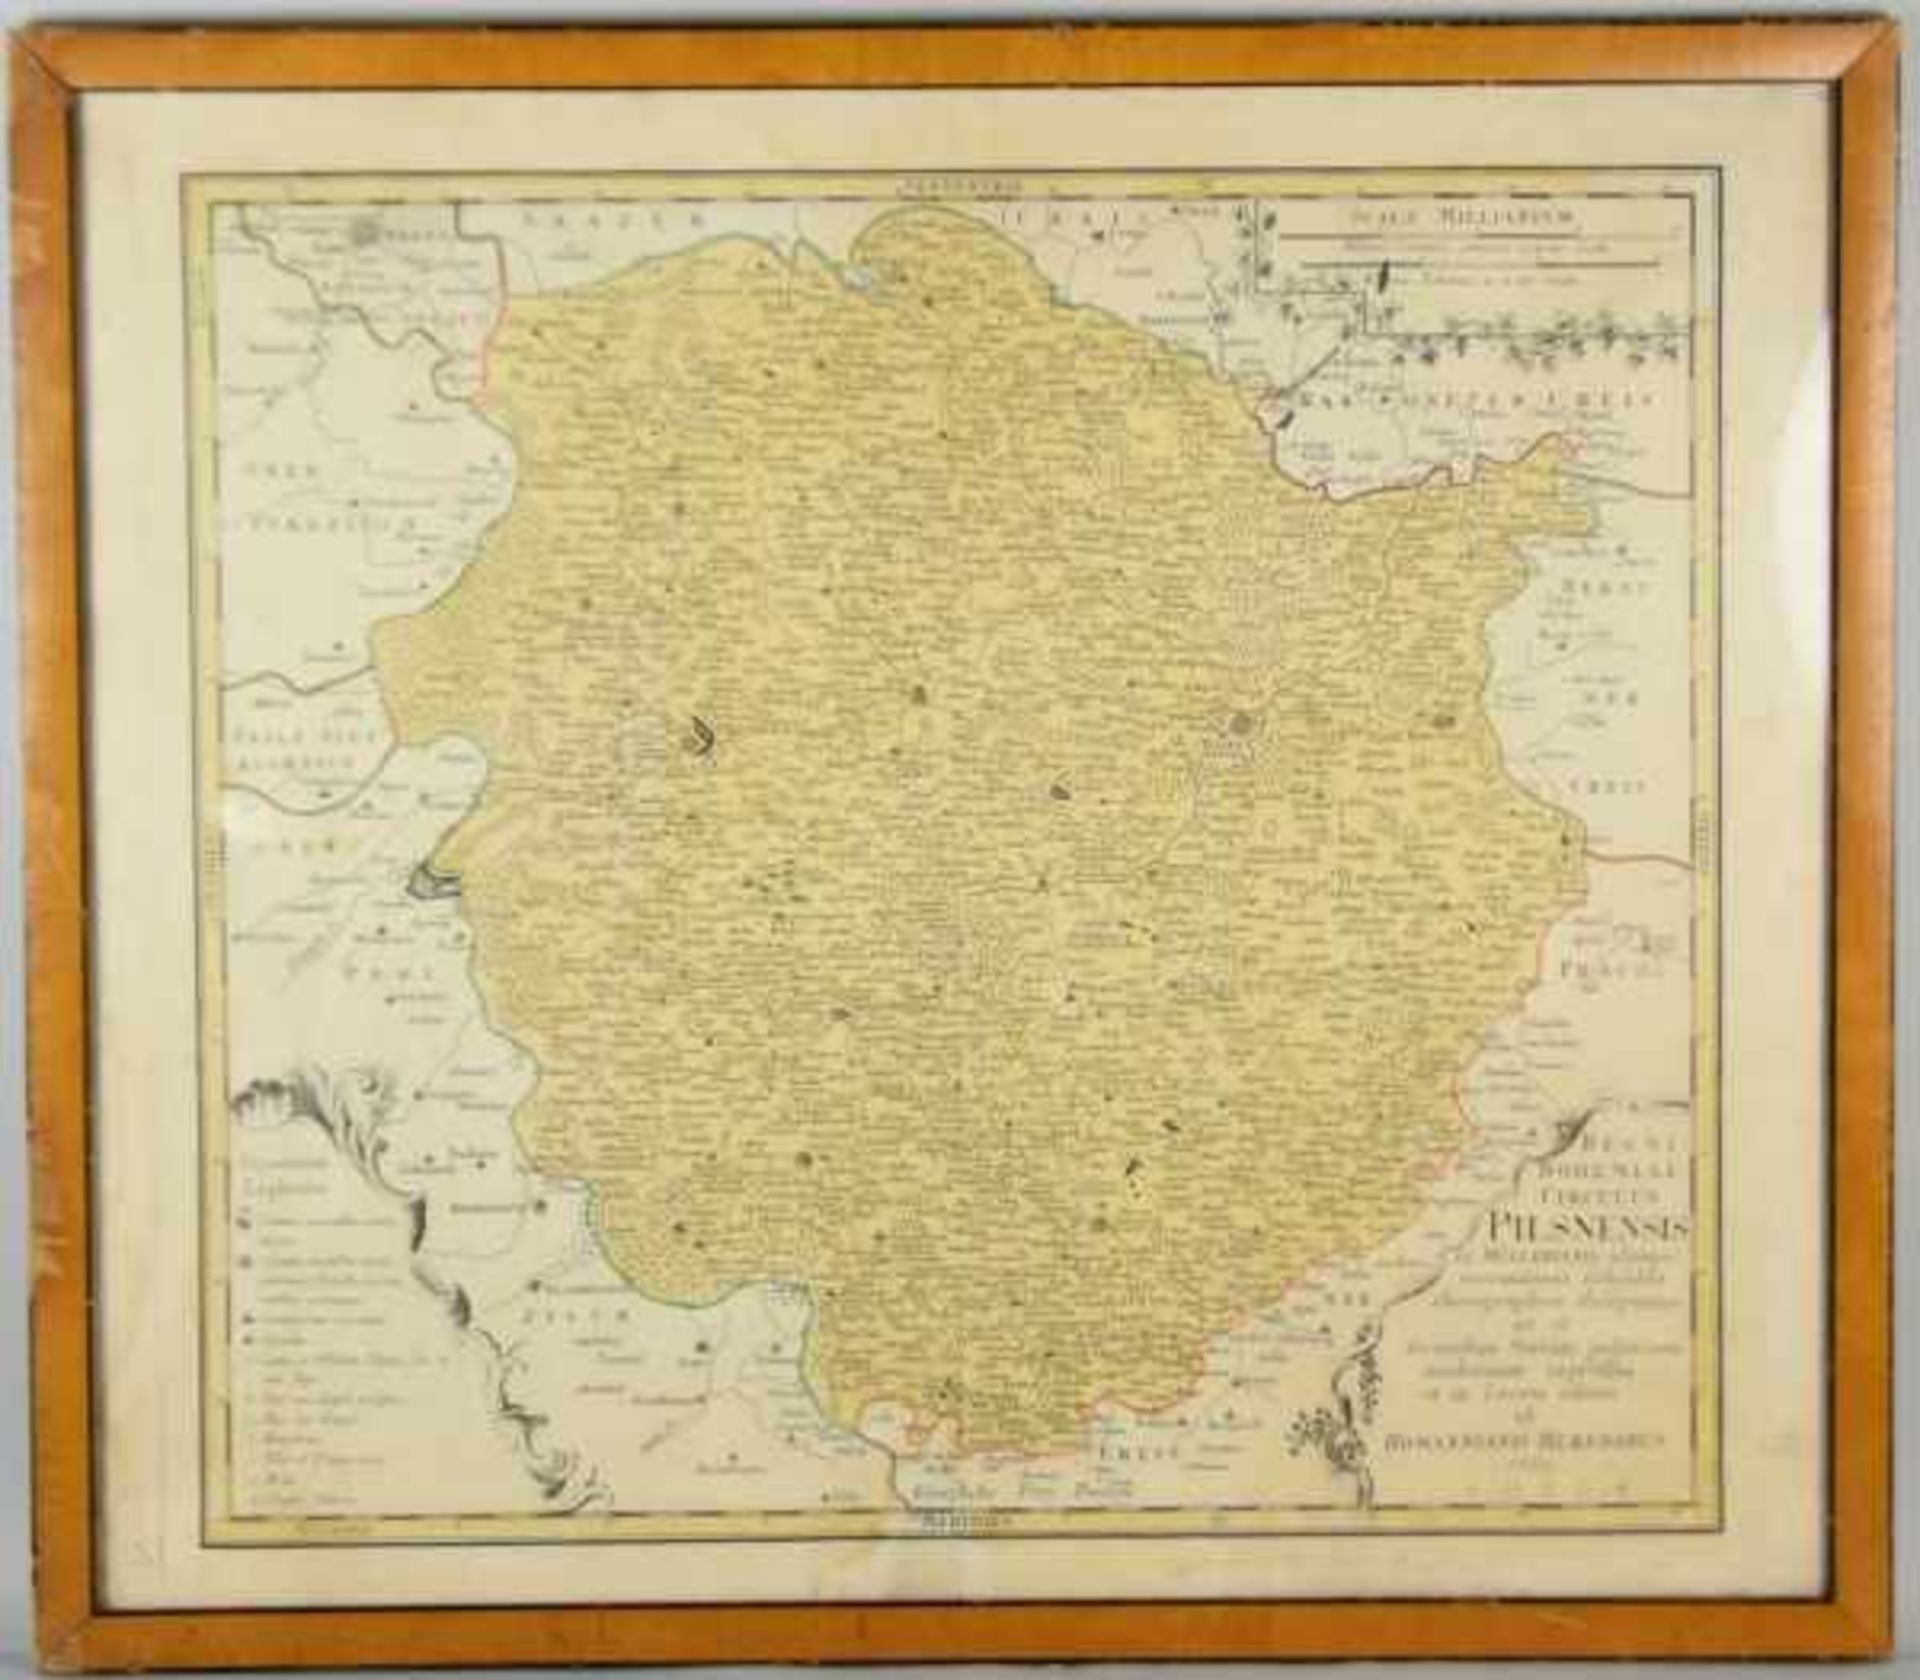 TOPOGRAFIE Landkarte Pilsen, rechts unten Kartusche mit Bezeichnung, Homannianis Heredibus, 1769, - Bild 2 aus 2